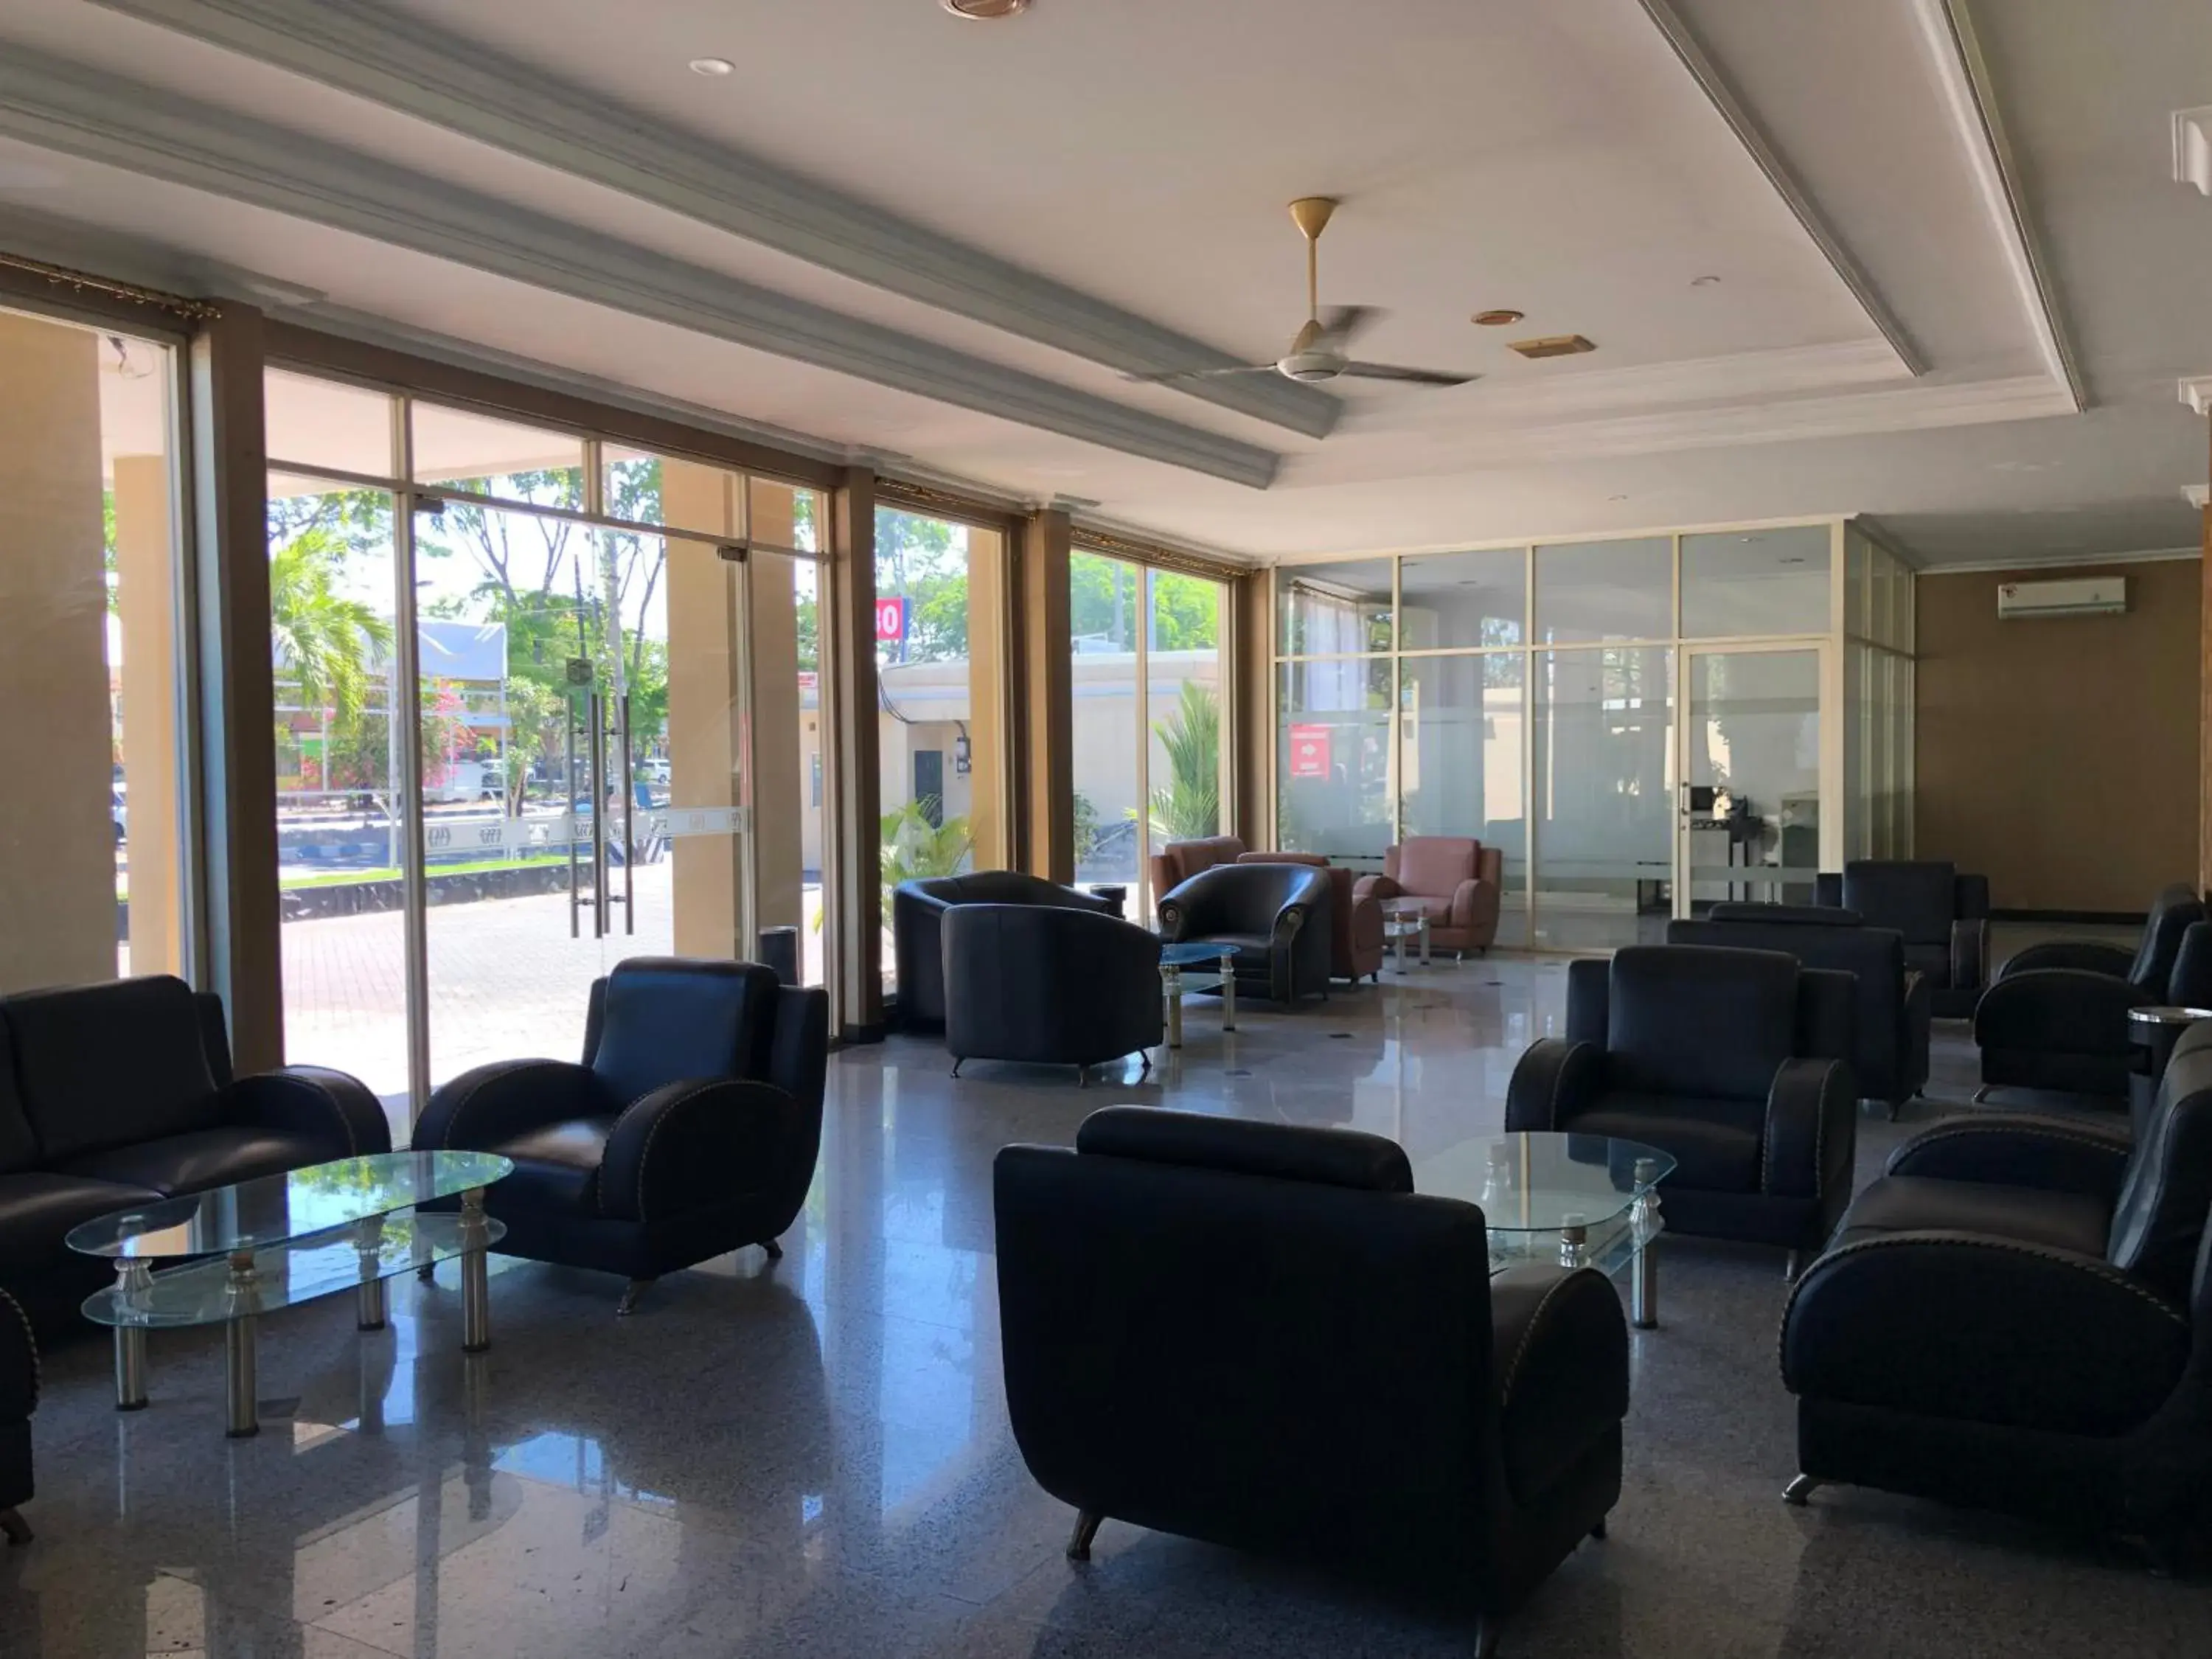 Lobby or reception in Hotel Sinar 3